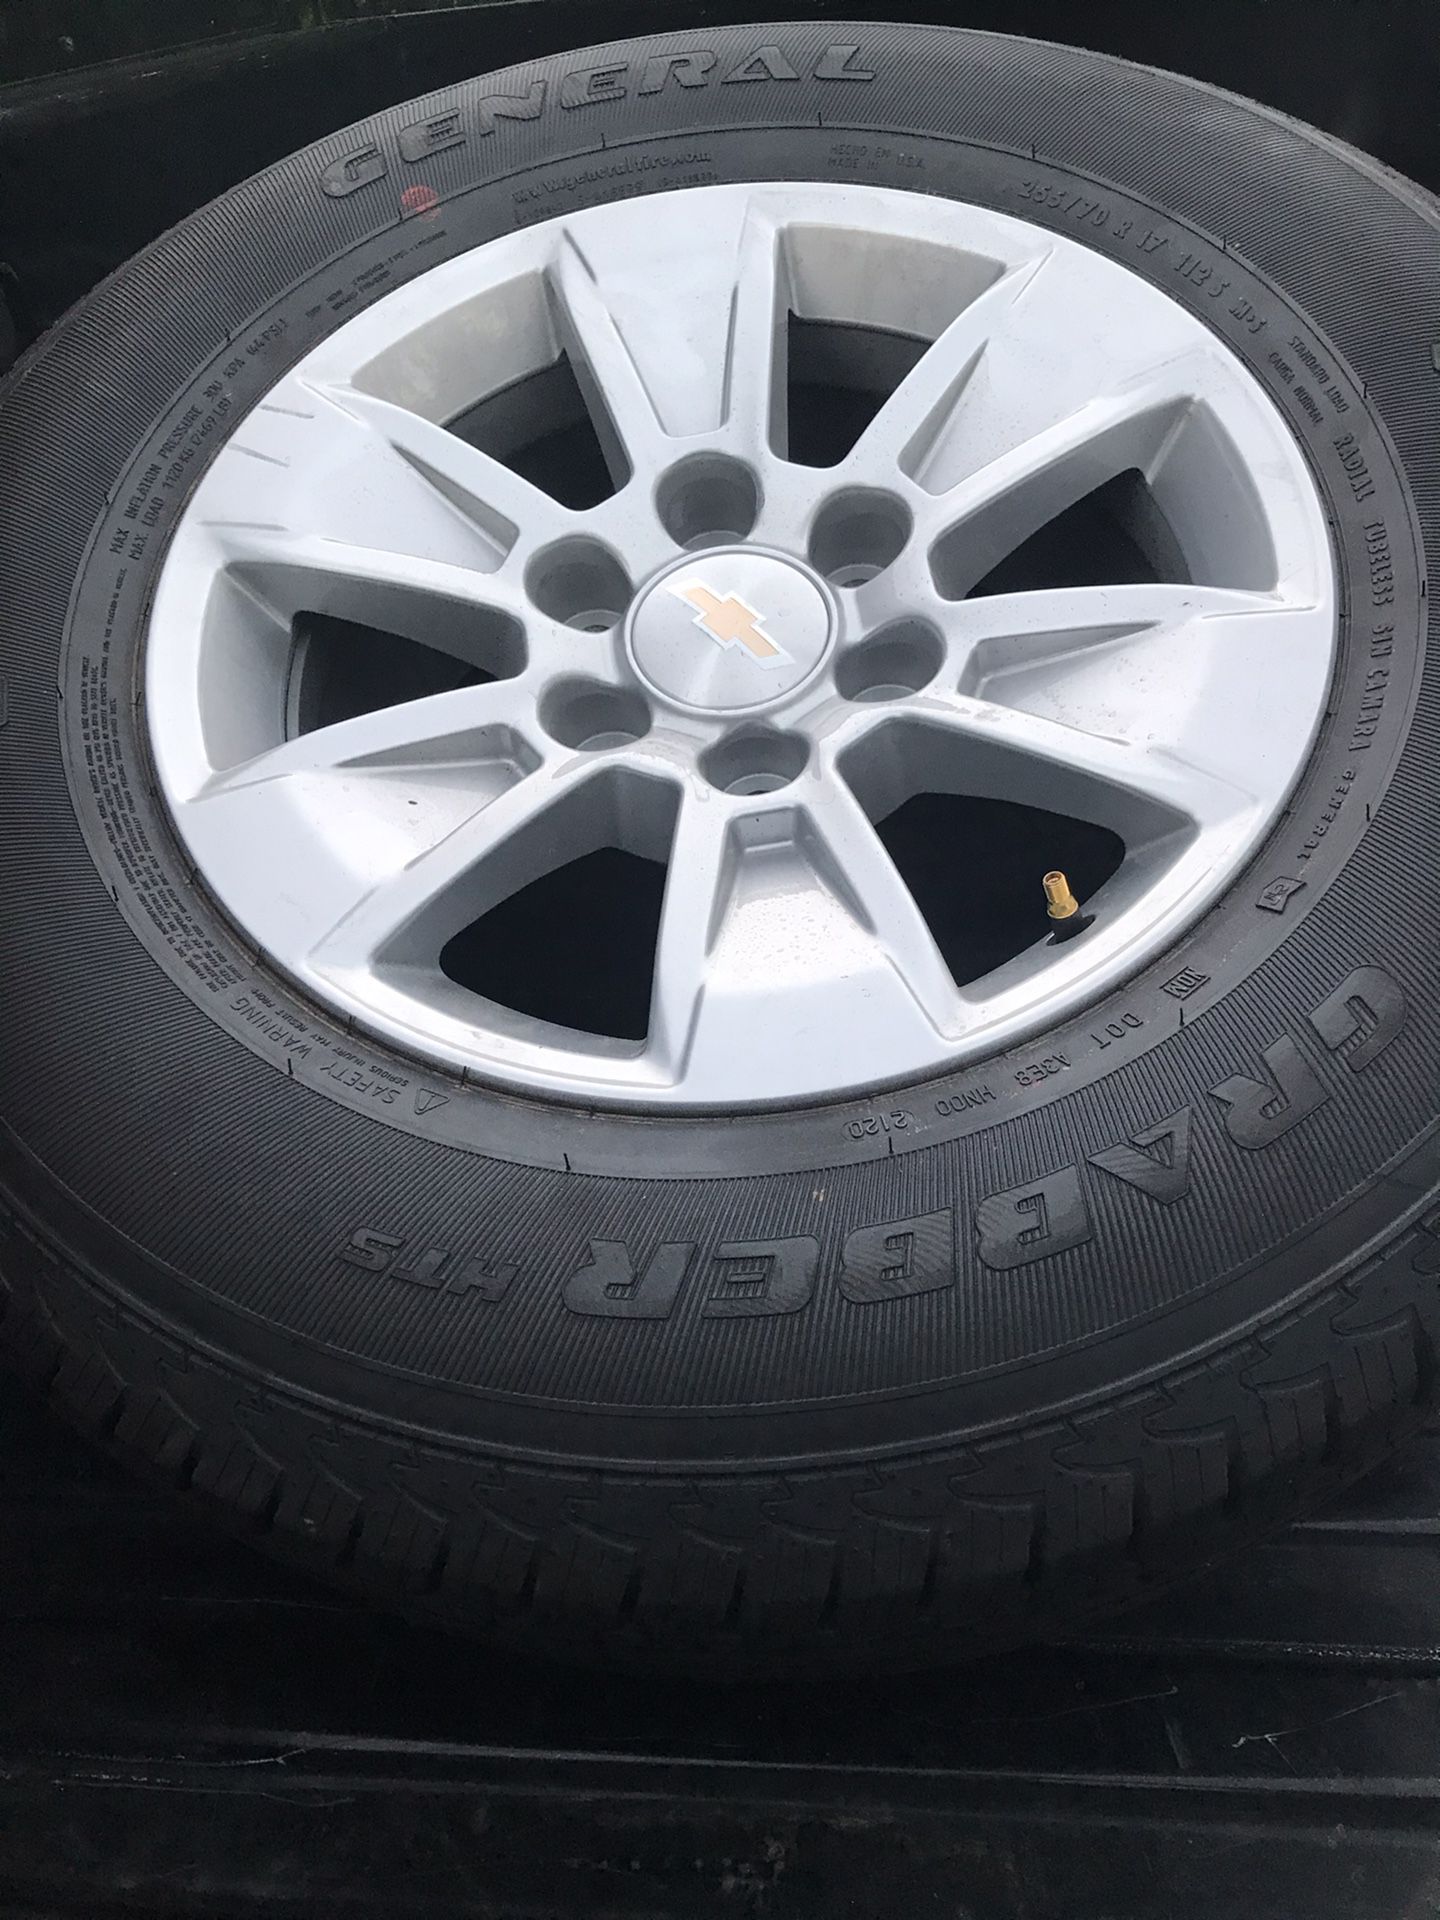 2020 Chevy Silverado rims and tires